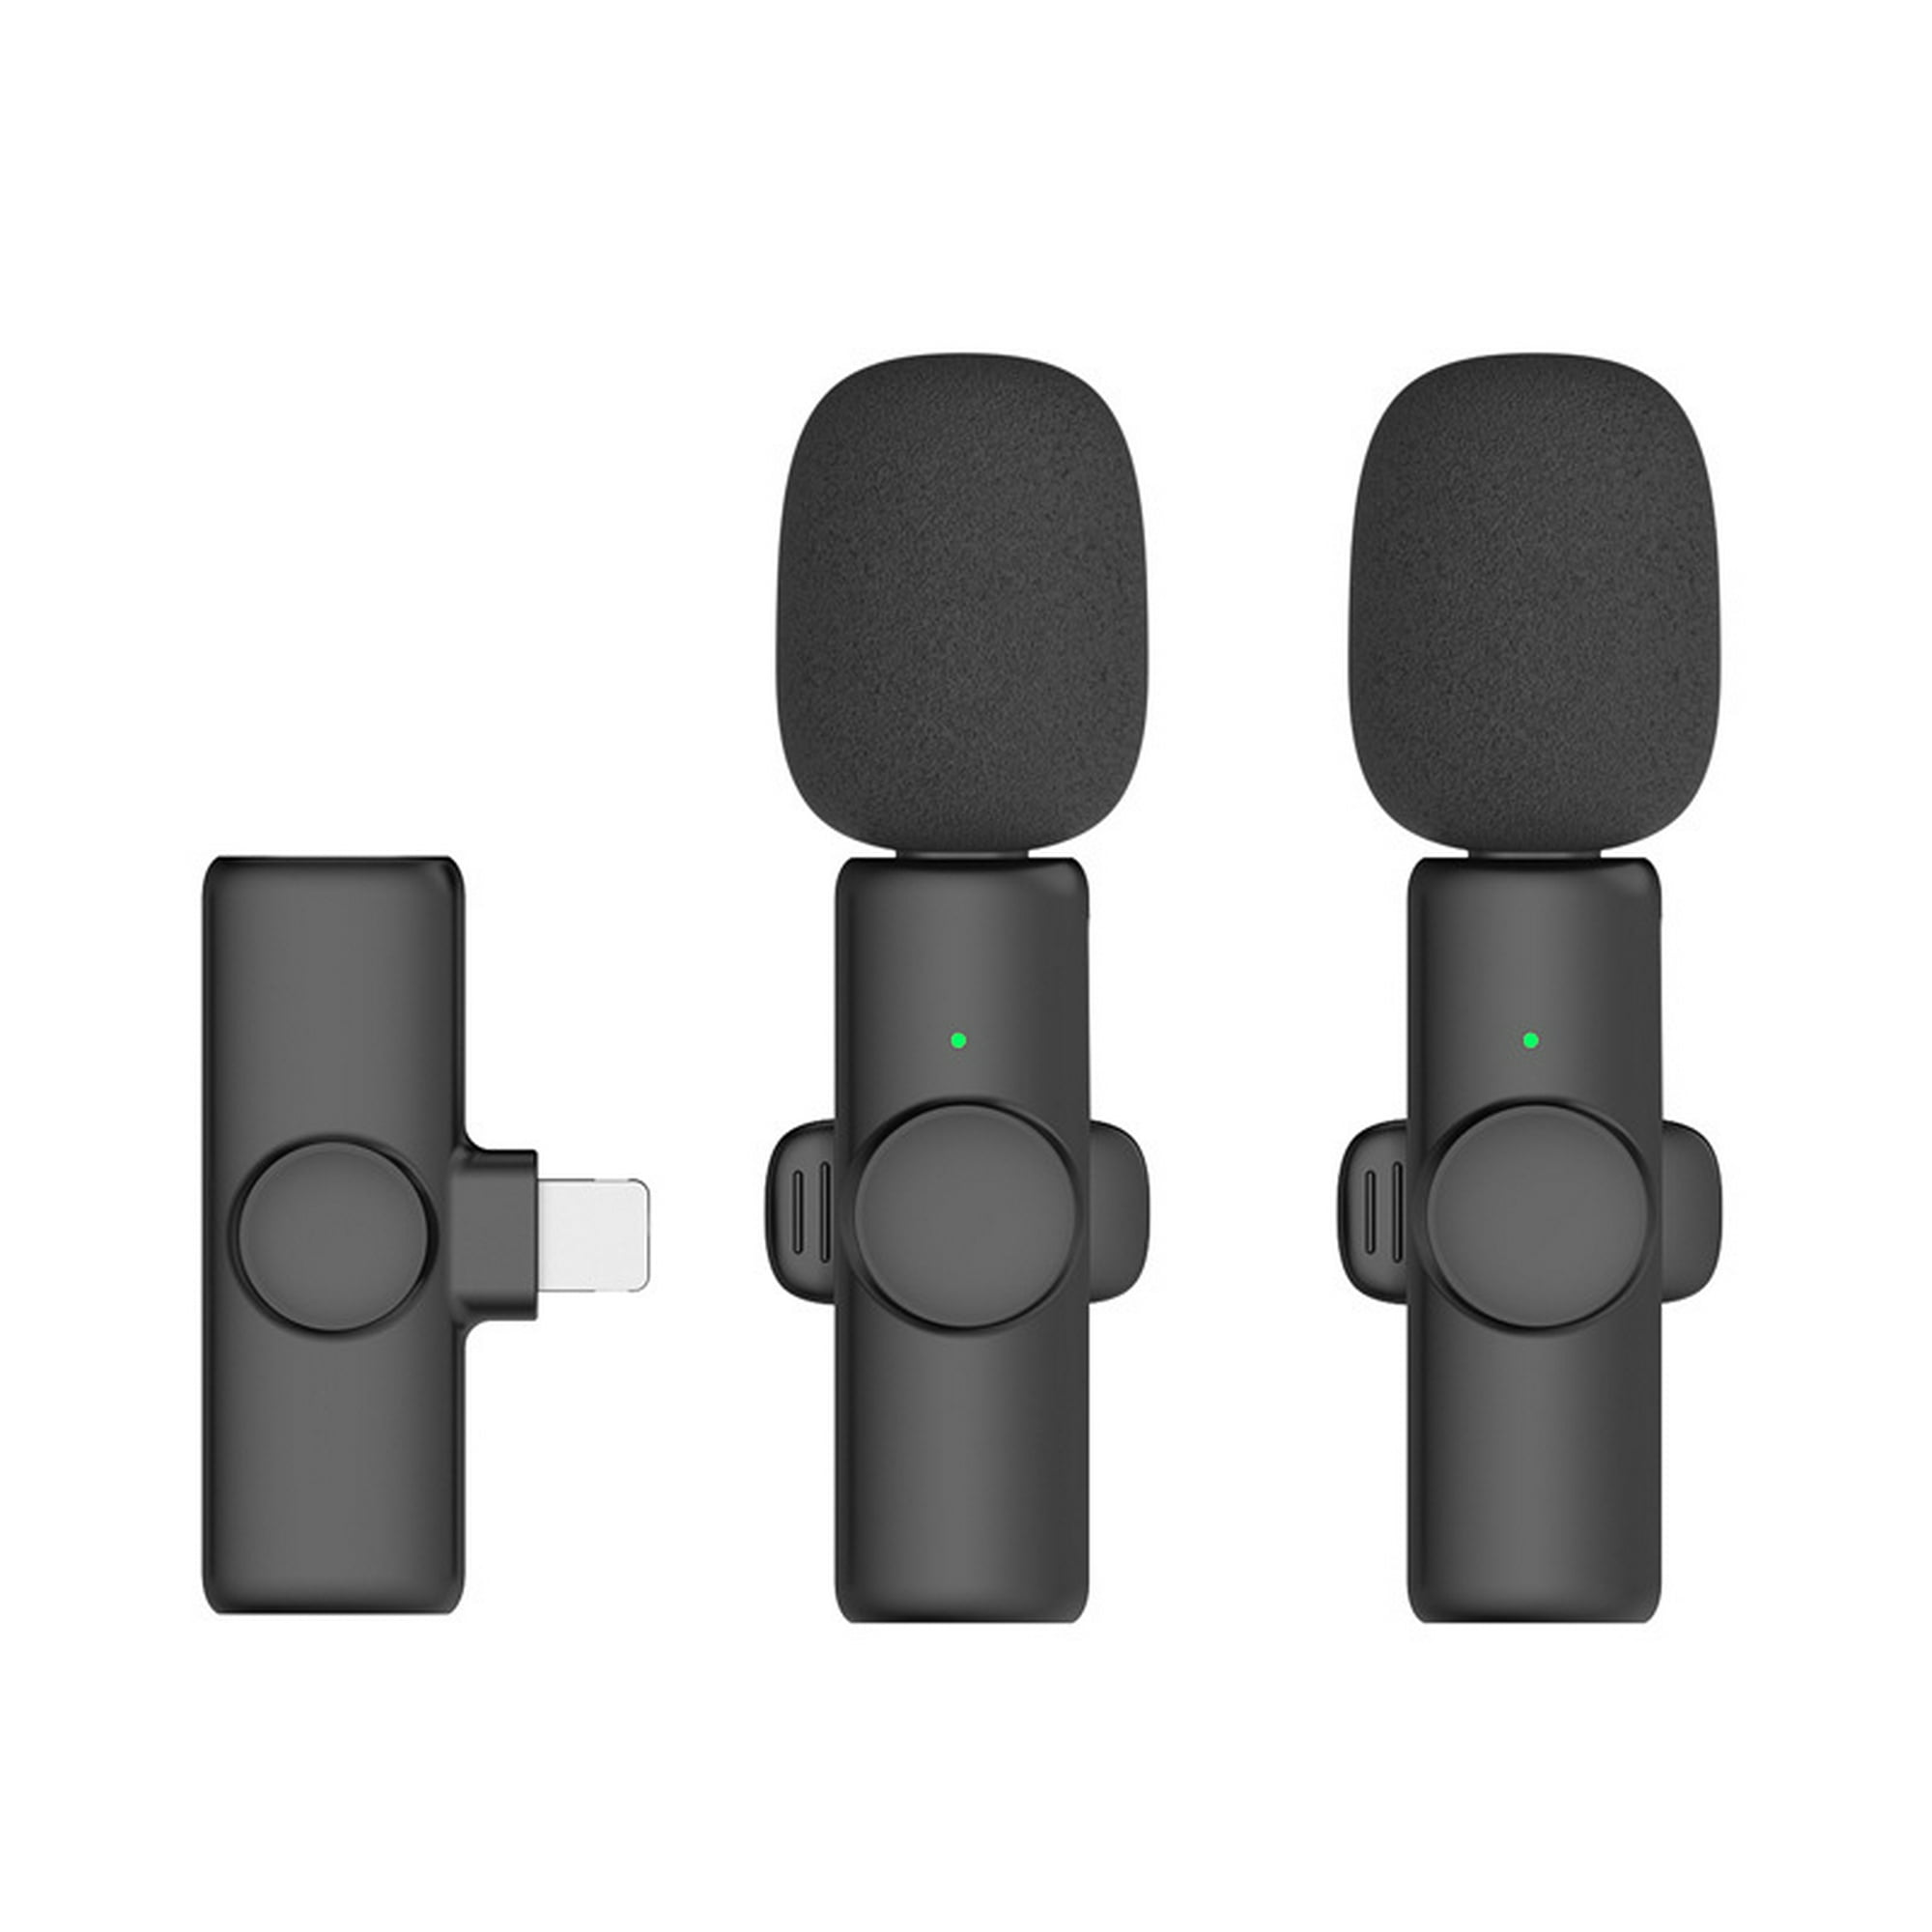 Micrófono inalámbrico para Iphone Ipad, micrófono Lavalier inalámbrico con  función de sincronización automática de reducción de ruido oso de fresa  Hogar